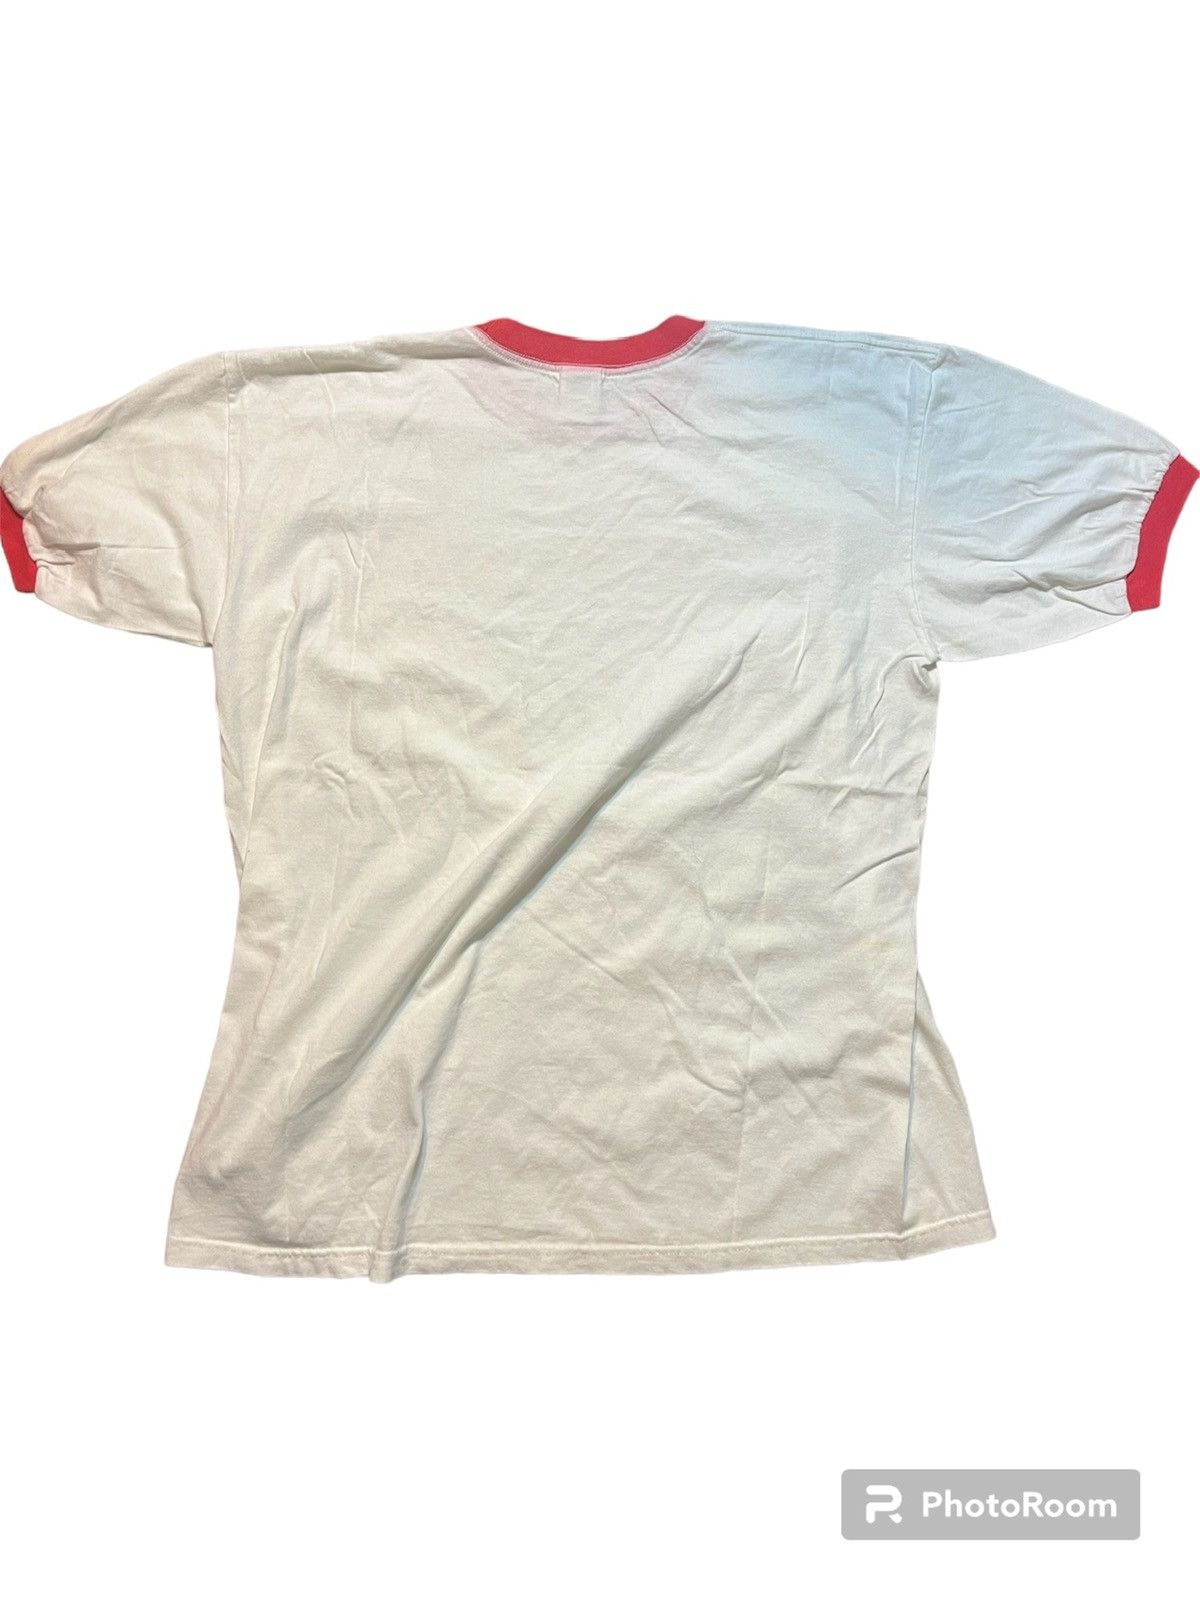 Vintage 2000s kiis FM ringer T shirt. Size US XL / EU 56 / 4 - 2 Preview